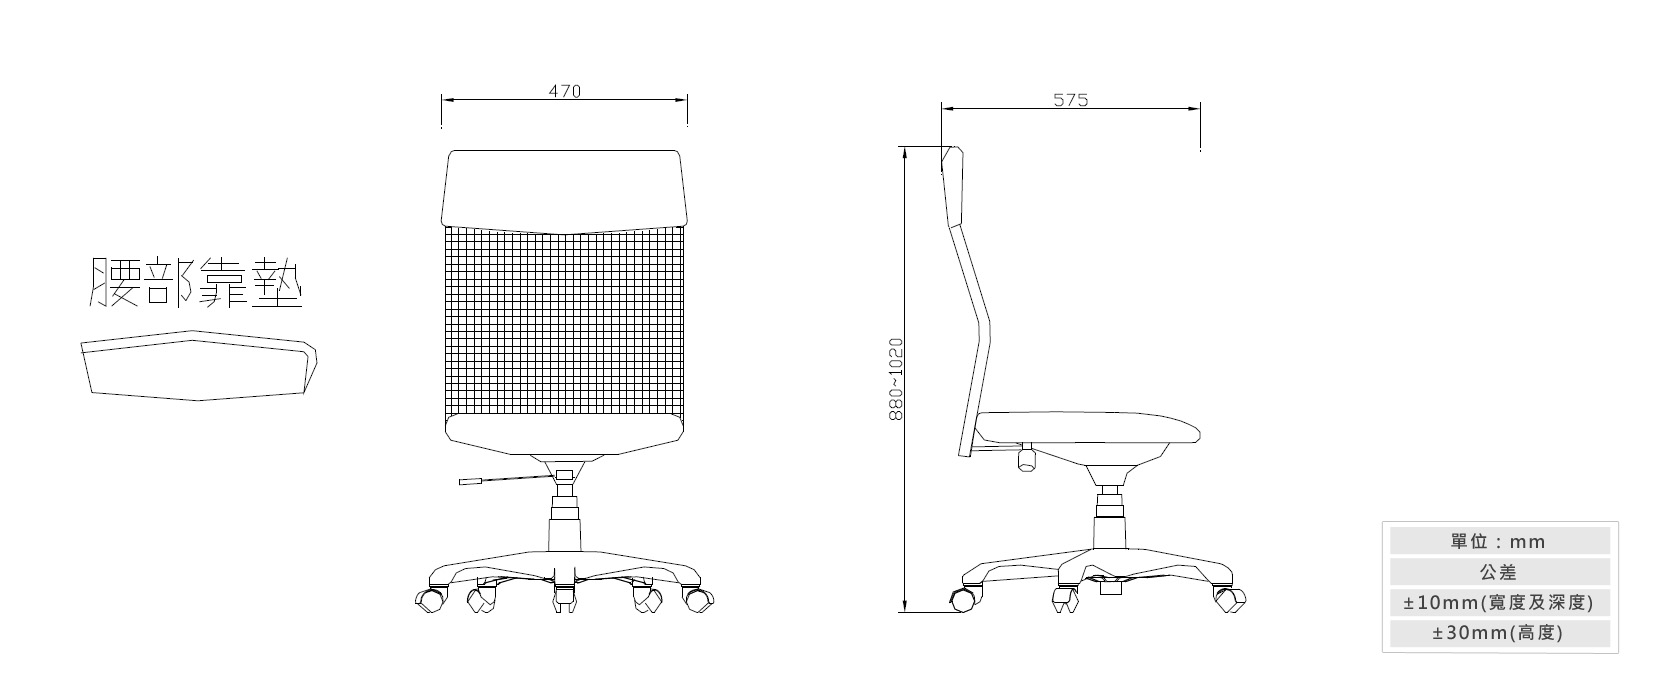 2-13辦公椅(彈性網布)材質說明